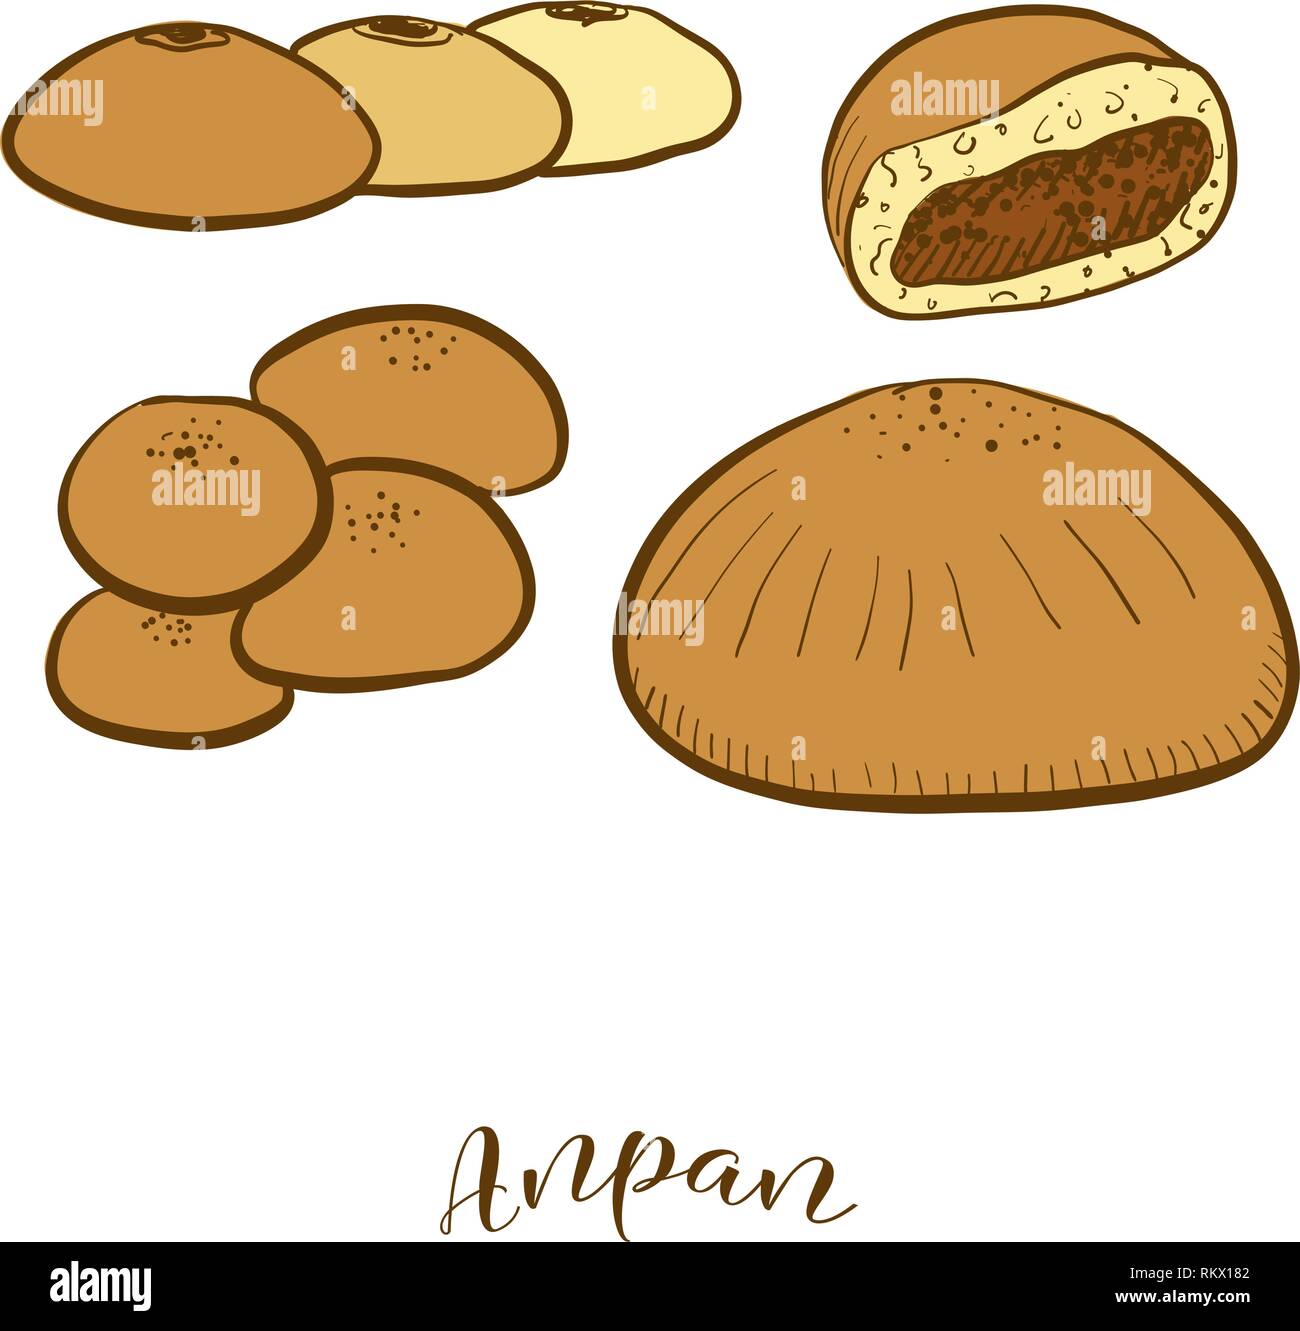 Farbige Skizzen von Anpan Brot. Vektor Zeichnung von süßen Brötchen essen, in der Regel in Japan bekannt. Farbige Brot Abbildung Serie. Stock Vektor